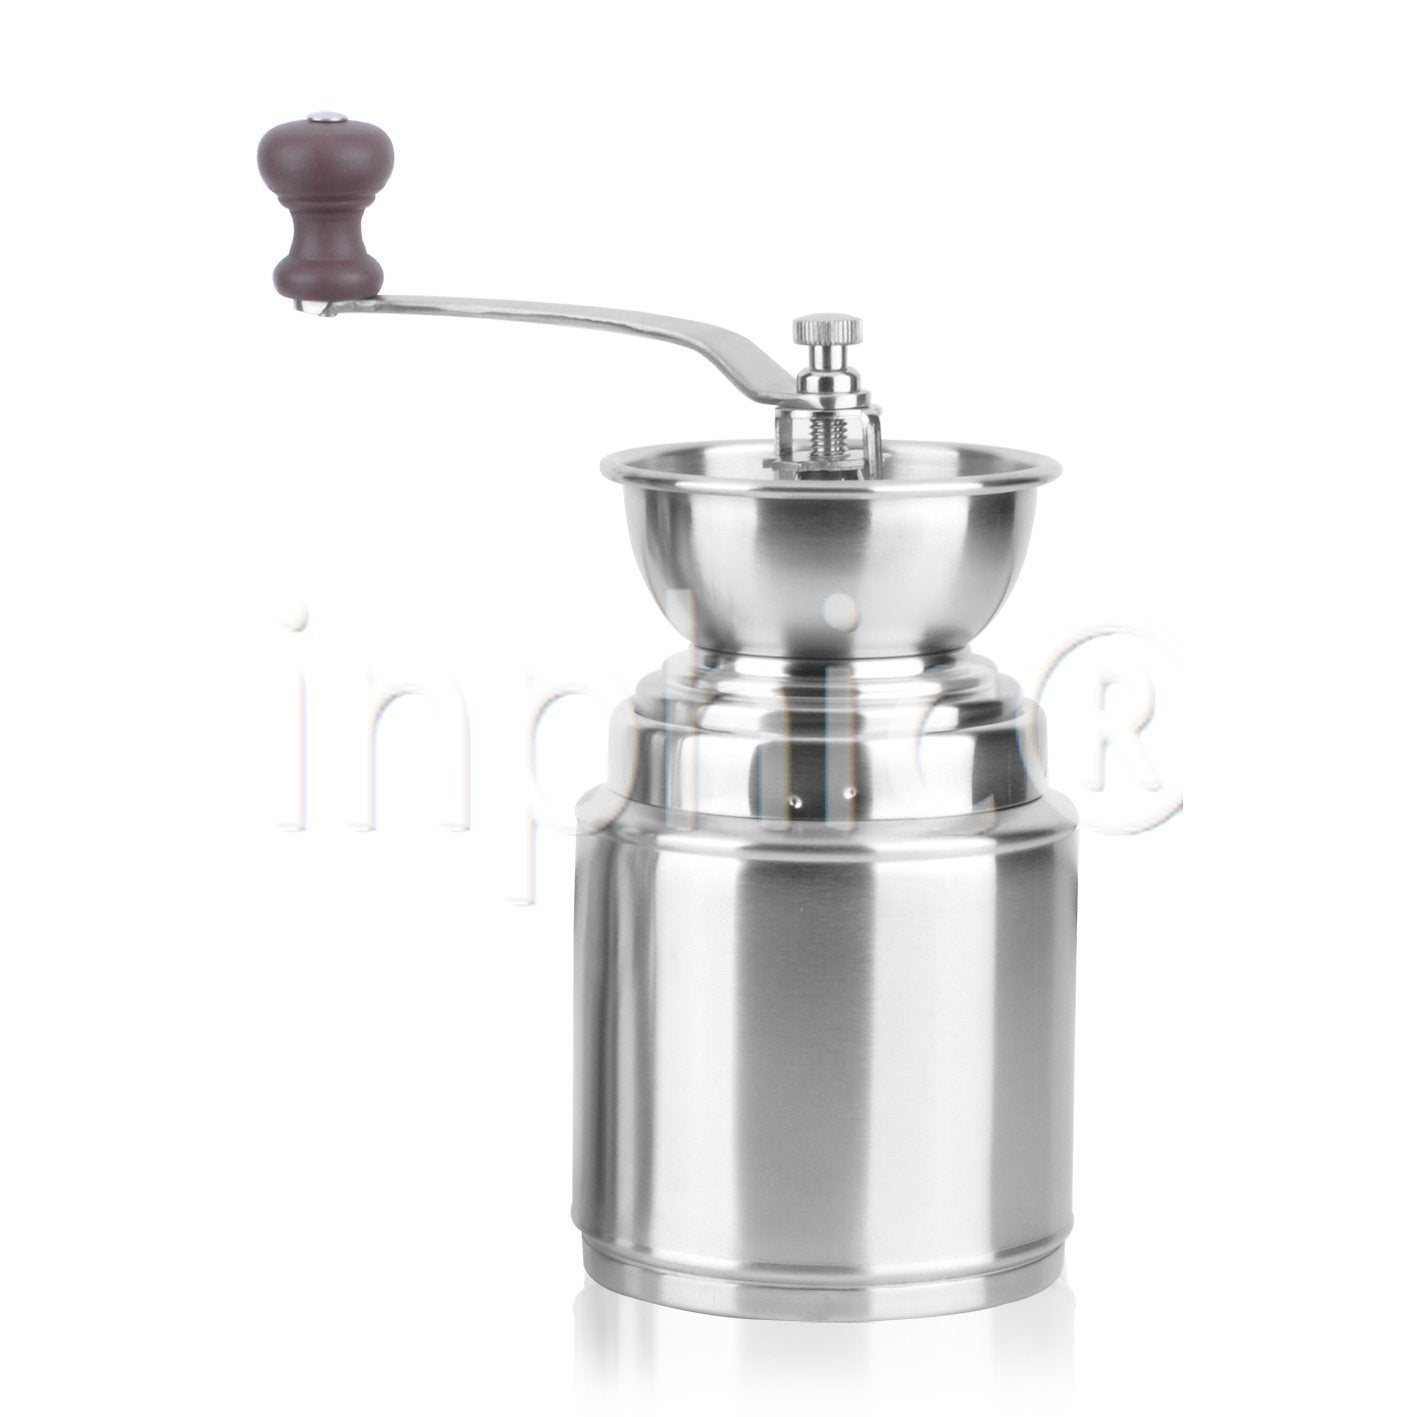 INPHIC-大款304圓形不鏽鋼手動磨豆機 家用手搖咖啡豆研磨機磨粉機